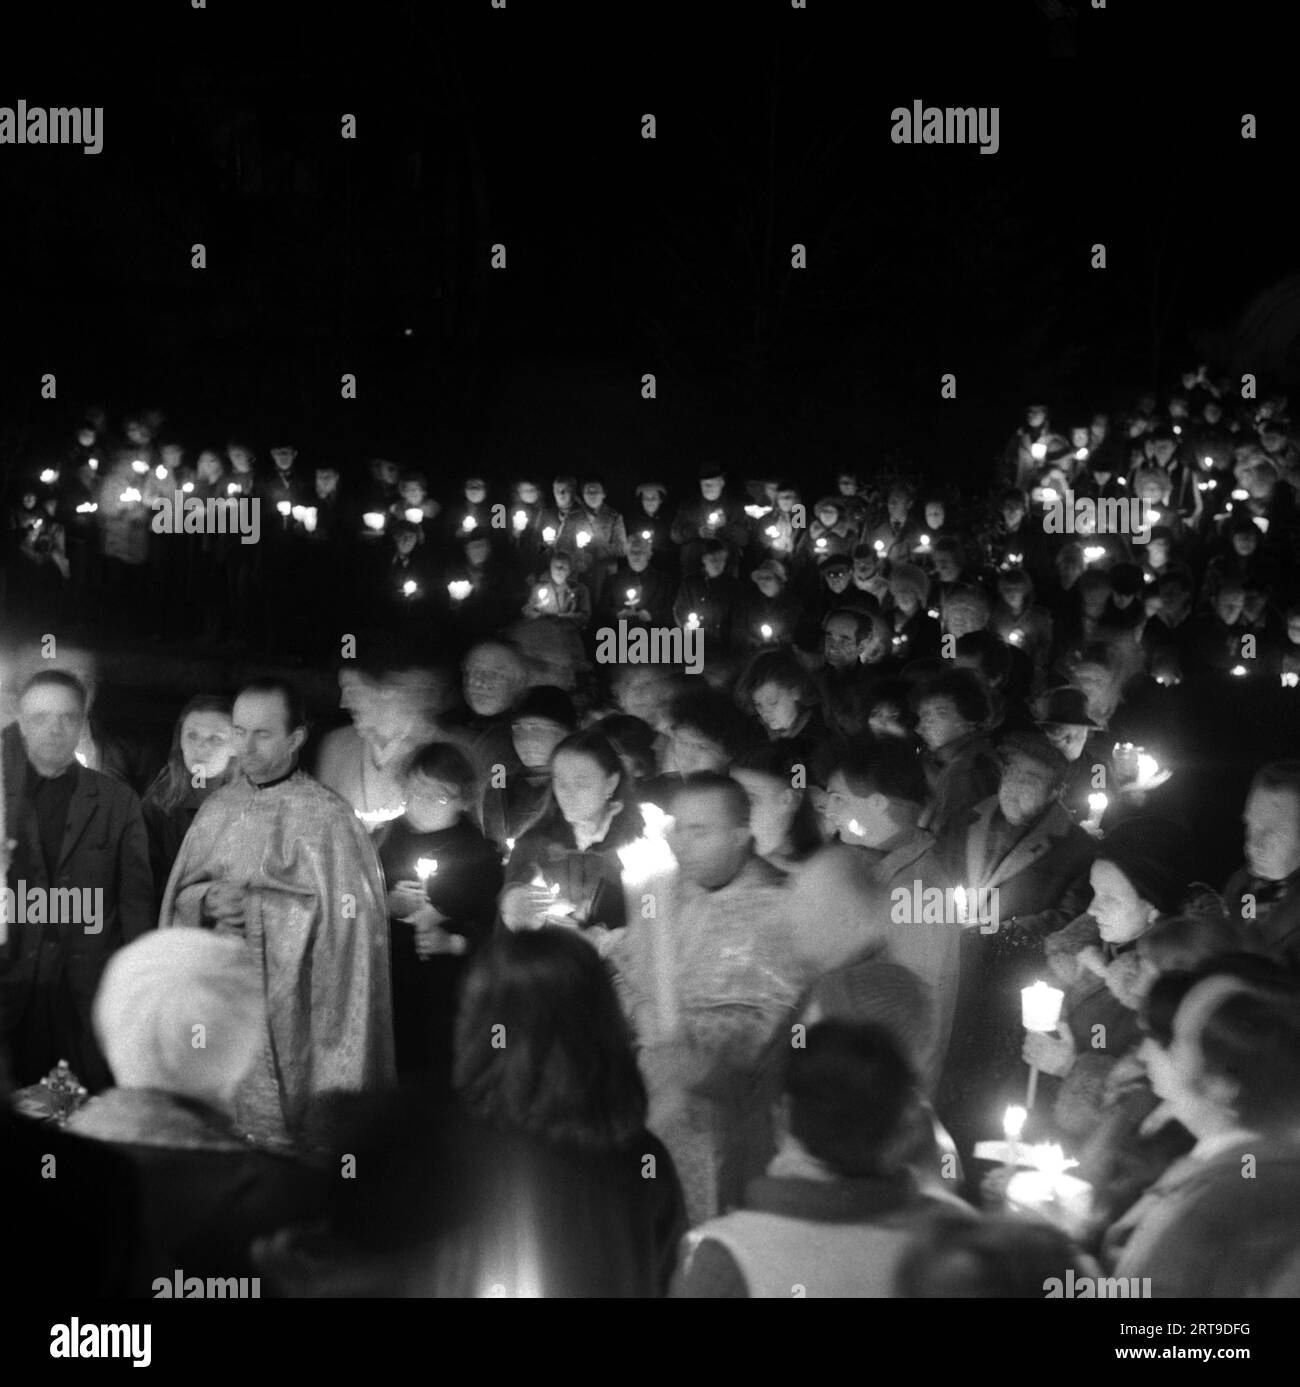 Die Sozialistische Republik Rumänien, ca. 1976. Abendlicher Ostergottesdienst vor einer christlich-orthodoxen Kirche. Gläubige, die brennende Kerzen halten, ein Symbol des Heiligen Lichts. Stockfoto